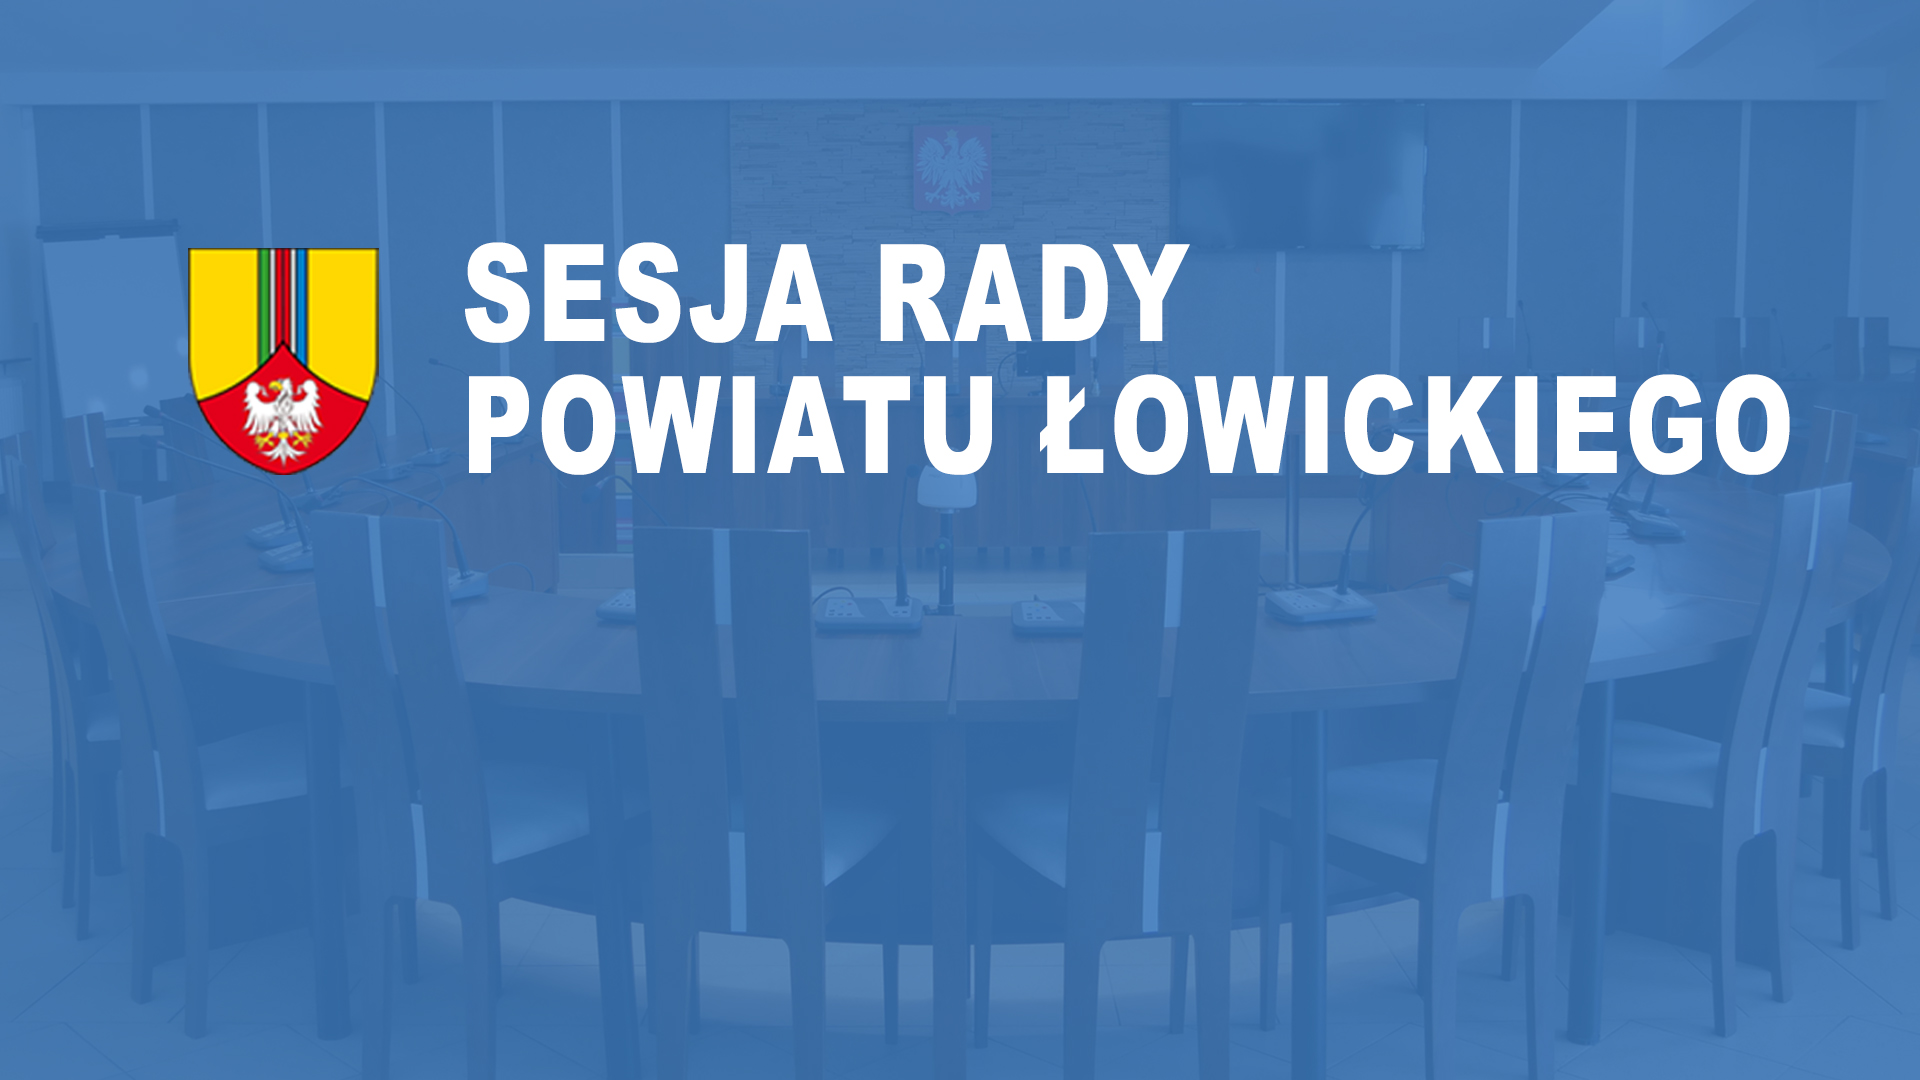 LVII Sesja Rady Powiatu Łowickiego